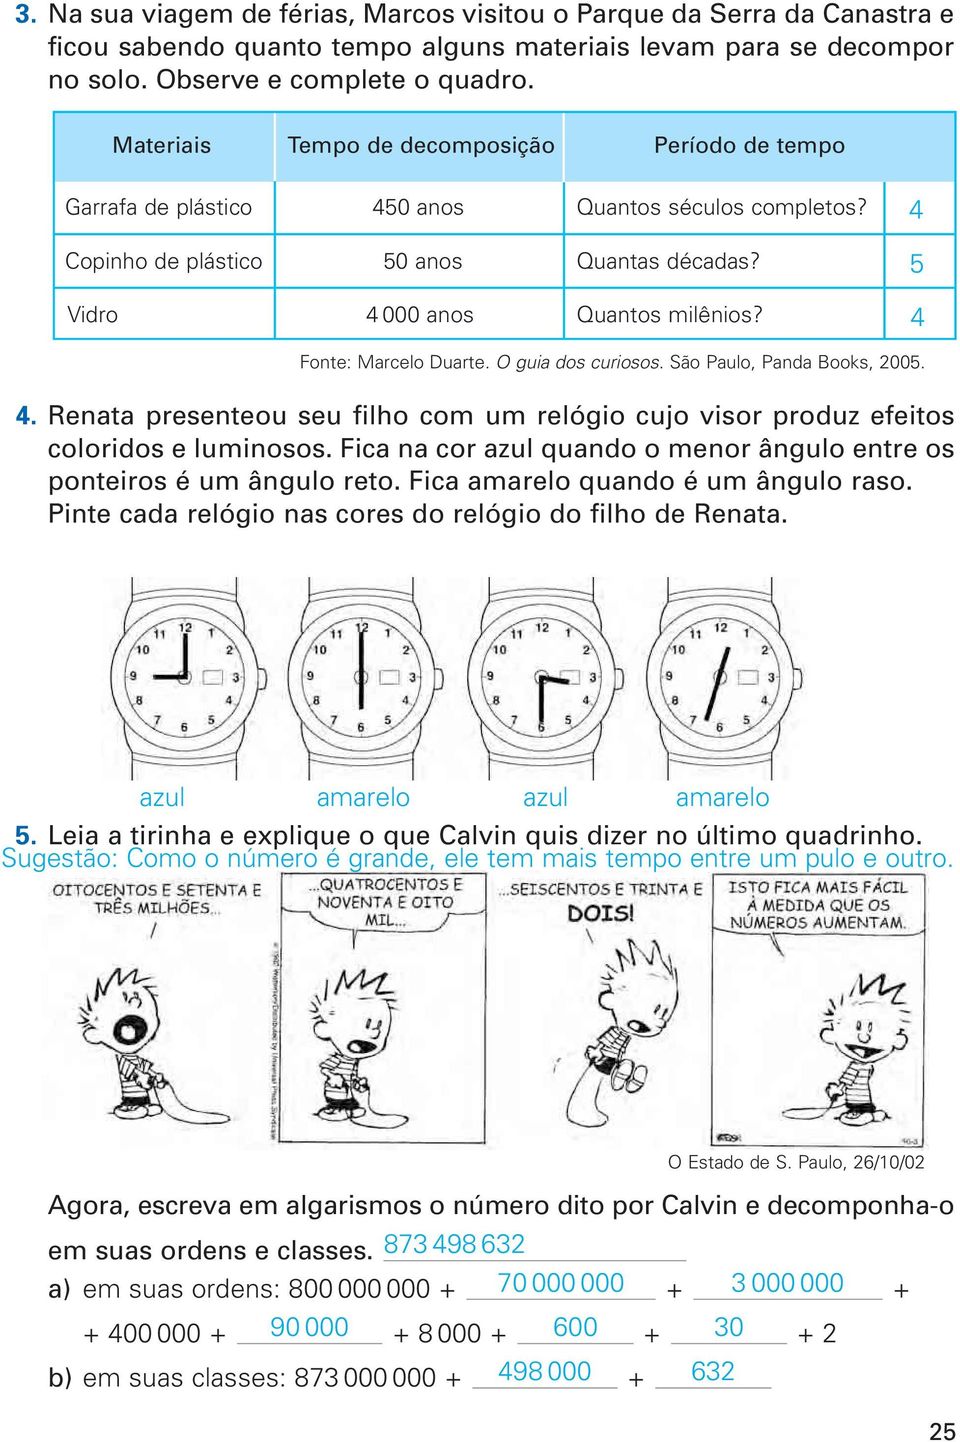 4 Fonte: Marcelo Duarte. O guia dos curiosos. São Paulo, Panda Books, 2005. 4. Renata presenteou seu filho com um relógio cujo visor produz efeitos coloridos e luminosos.